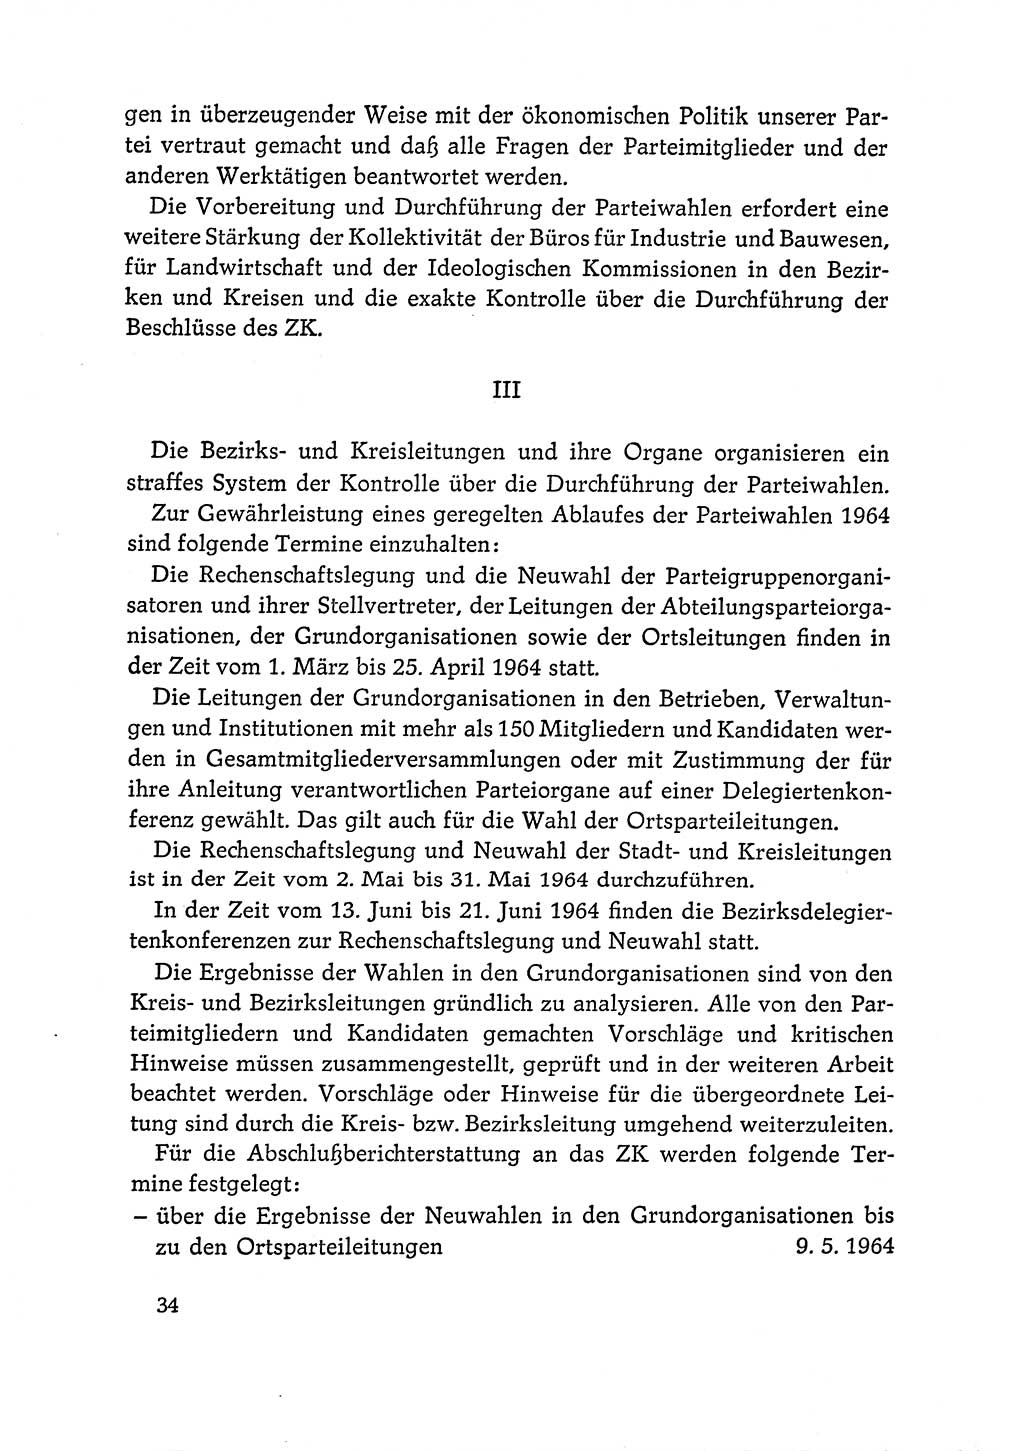 Dokumente der Sozialistischen Einheitspartei Deutschlands (SED) [Deutsche Demokratische Republik (DDR)] 1964-1965, Seite 34 (Dok. SED DDR 1964-1965, S. 34)